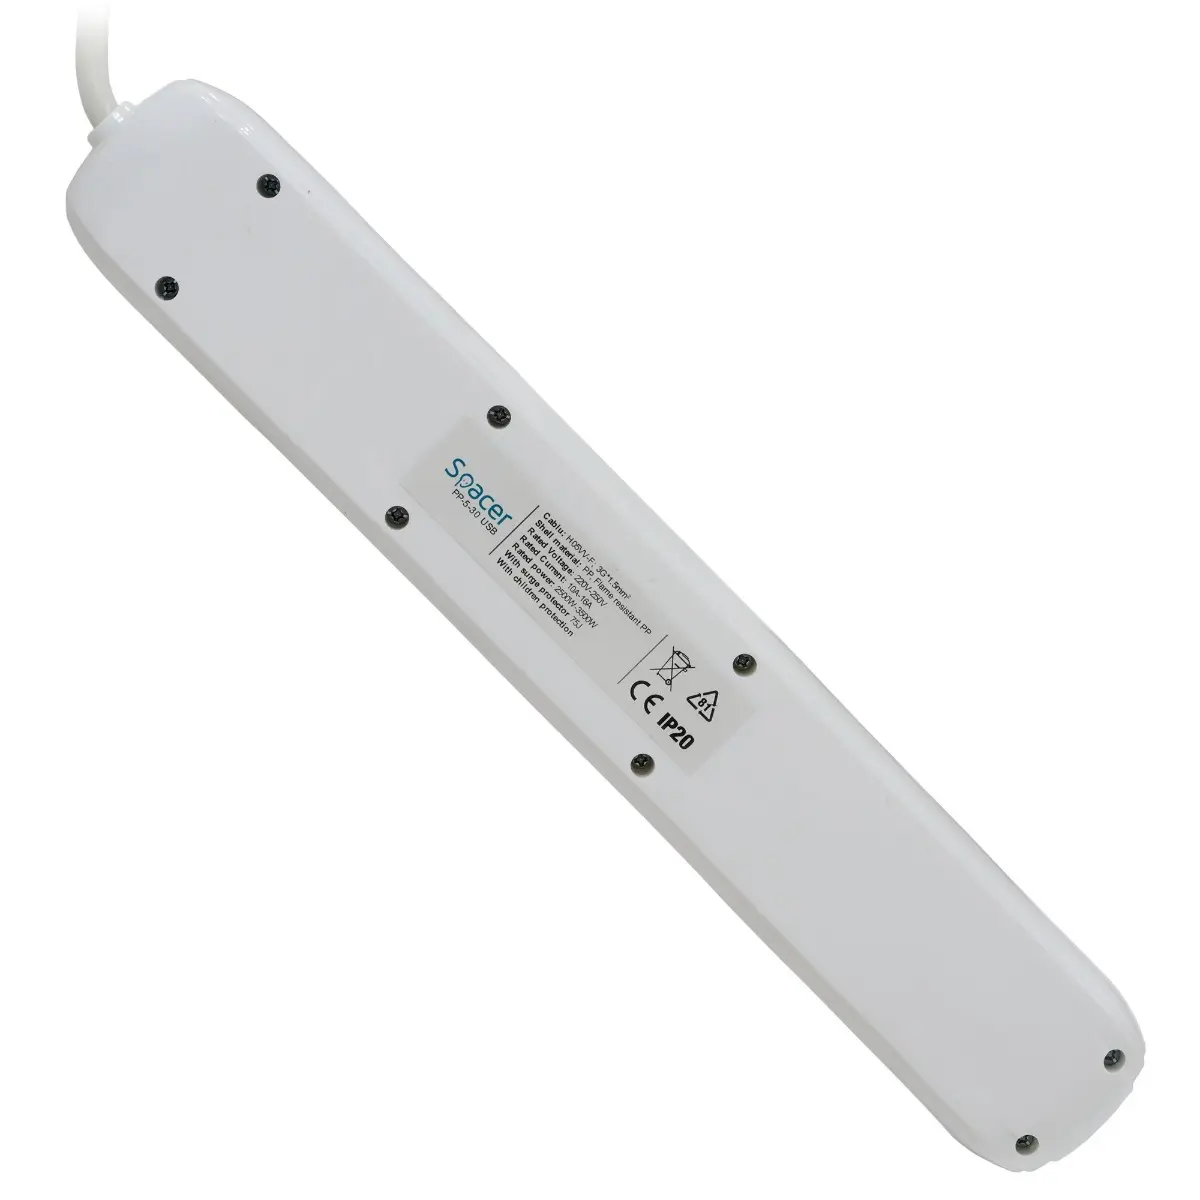 Prelungitor Spacer PP-5-45 USB, Schuko x 5, conectare prin Schuko (T), USB x 2, cablu 4.5 m, 16 A, max. 3500W, protectie supratensiune, Alb